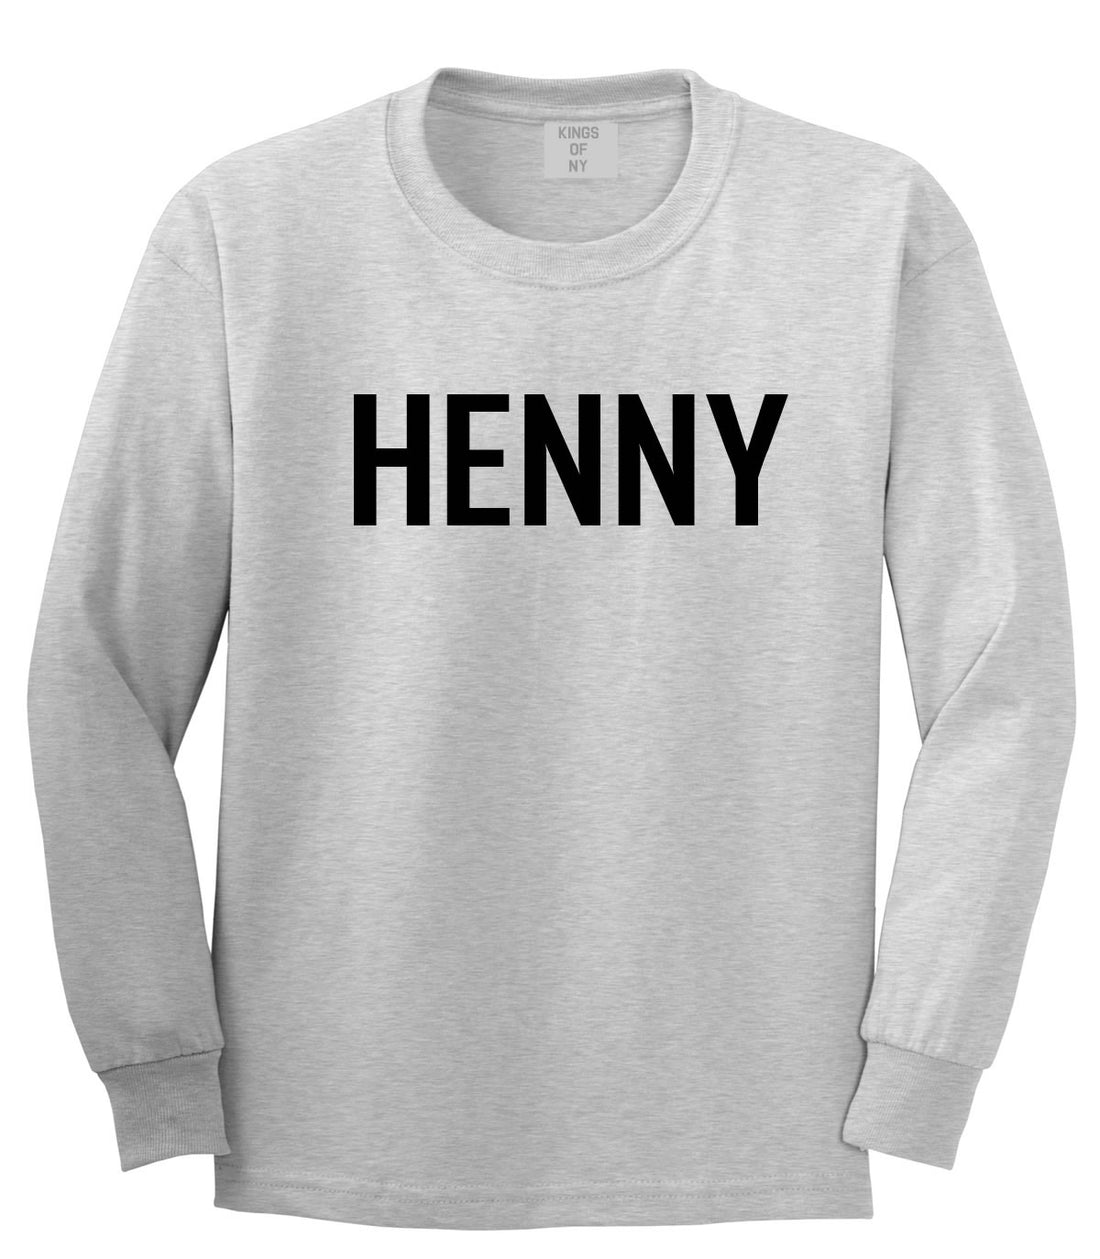 Henny Long Sleeve T-Shirt by Kings Of NY